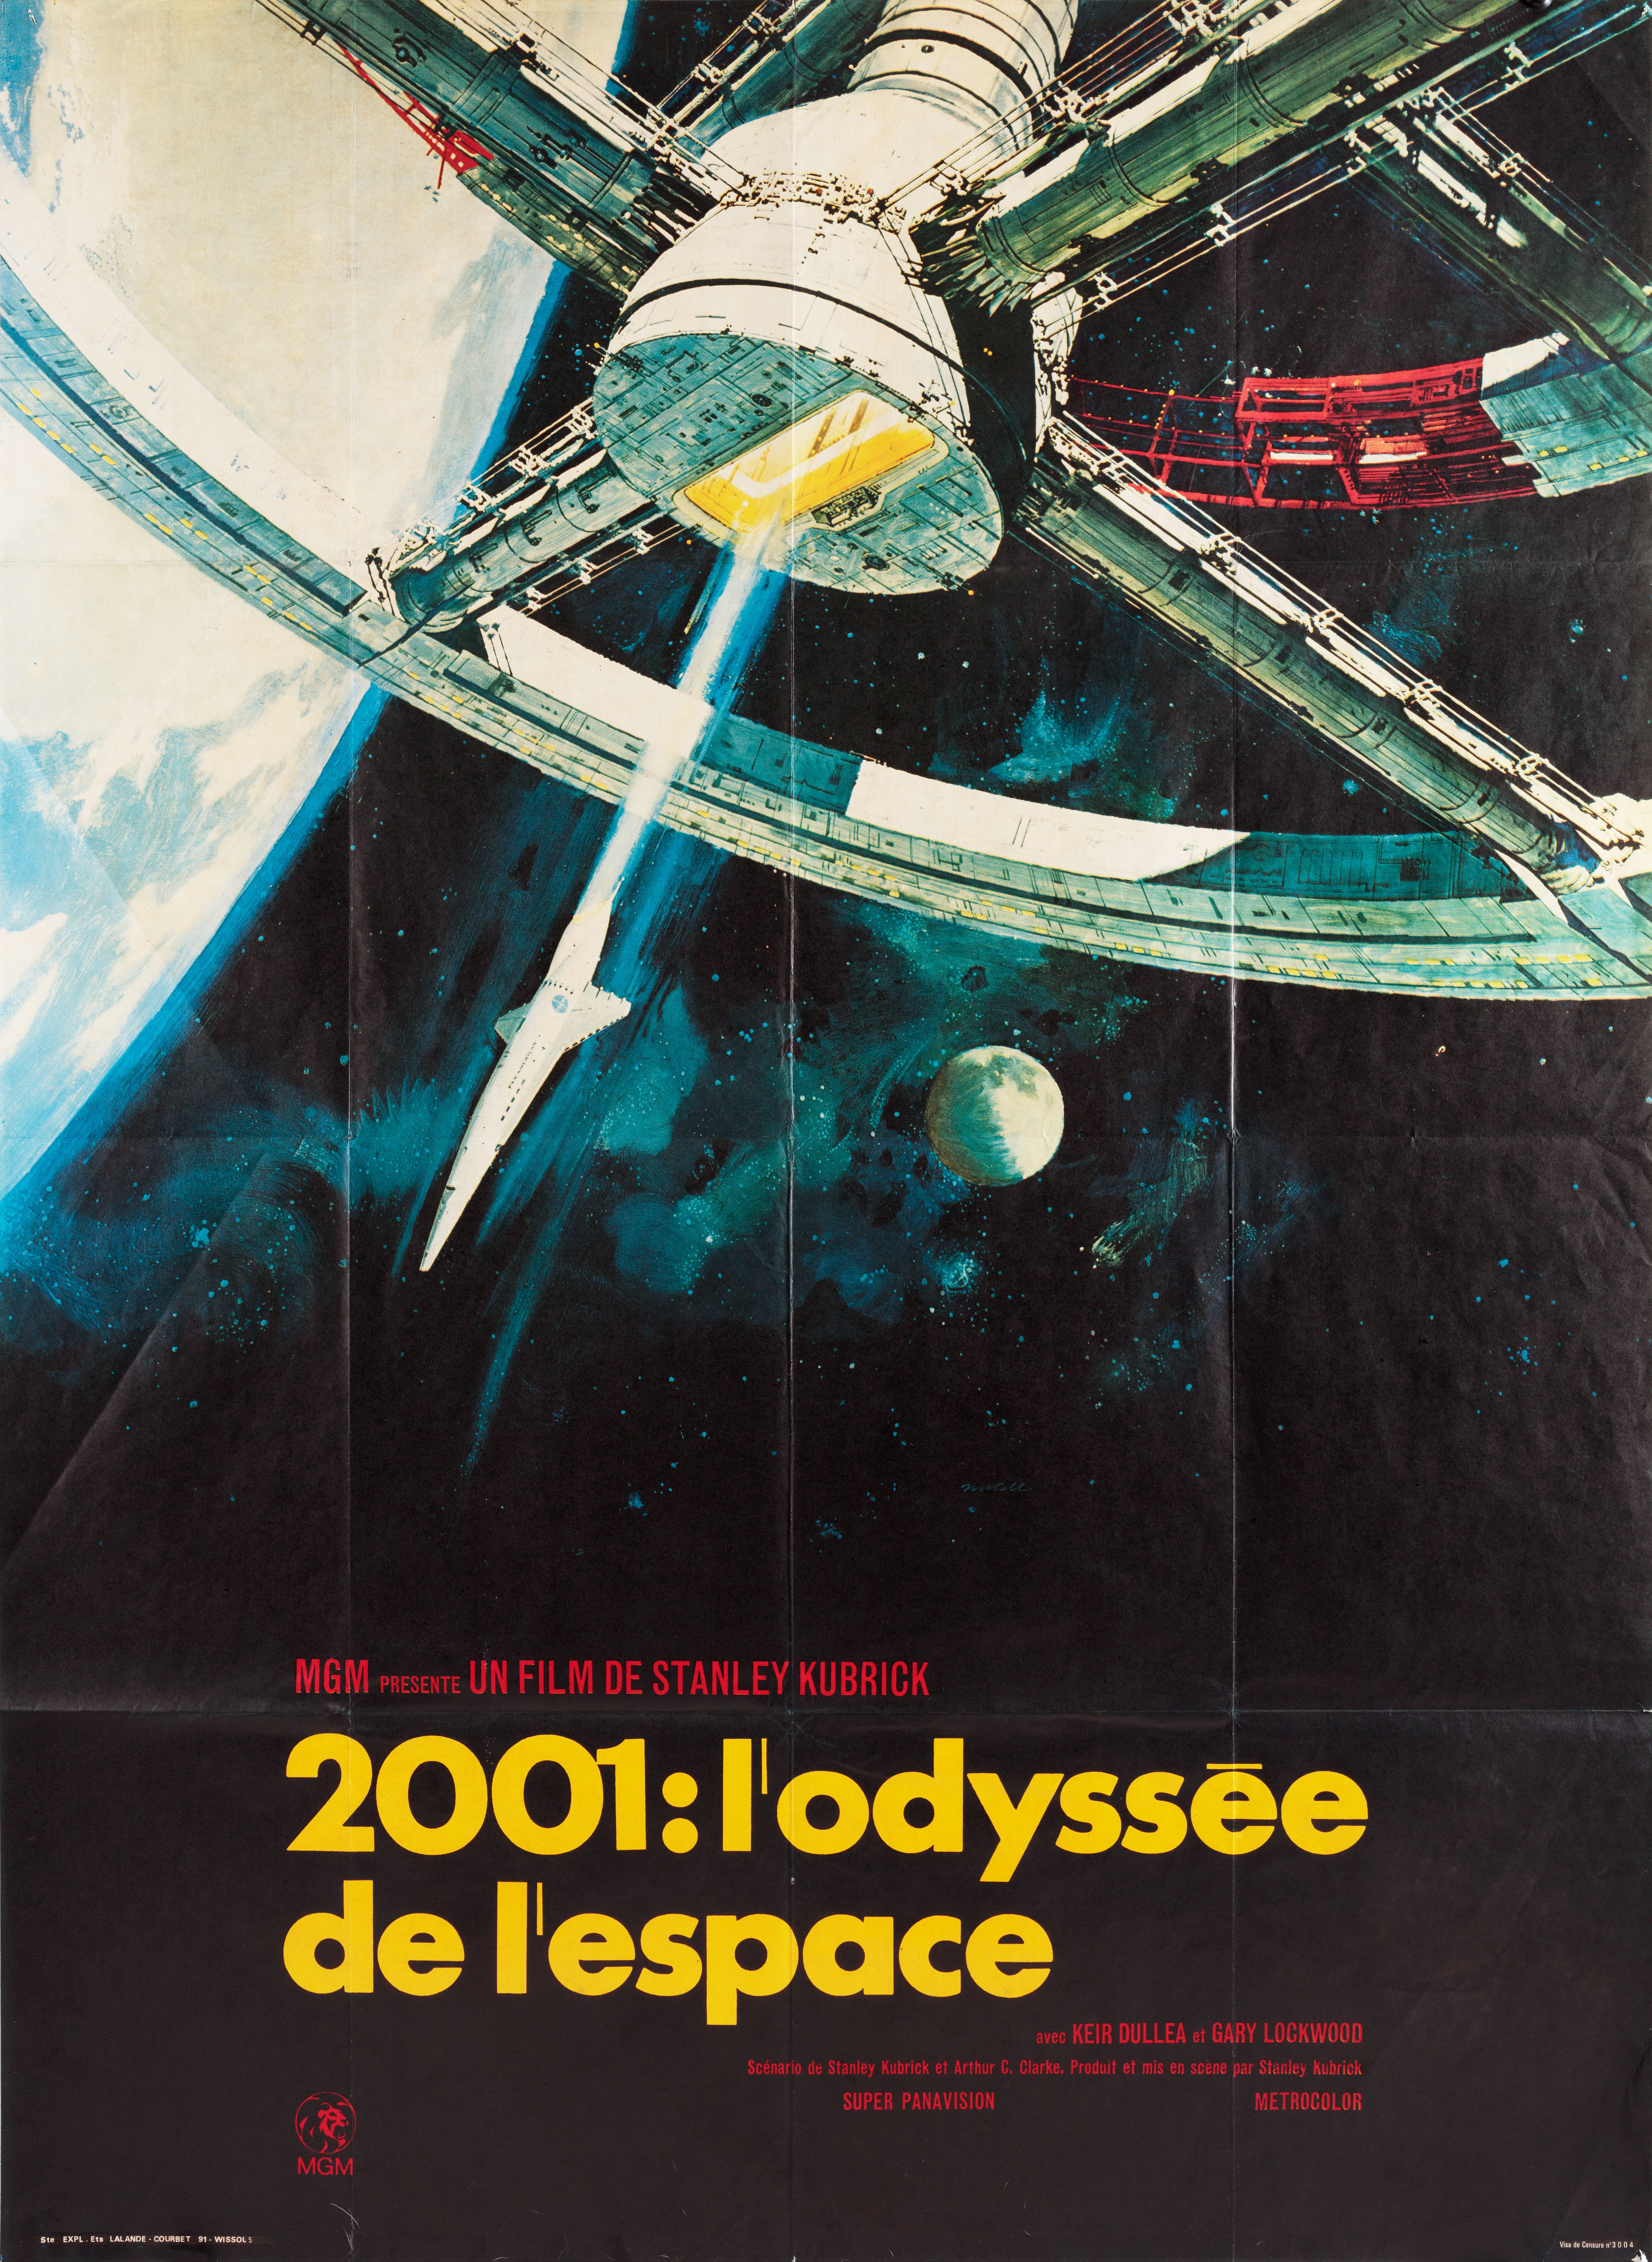 2001 год: Космическая одиссея (2001 A Space Odyssey, 1968), режиссёр Стэнли Кубрик, художественный постер к фильму (Франция, 1970 год), автор Роберт МакКолл